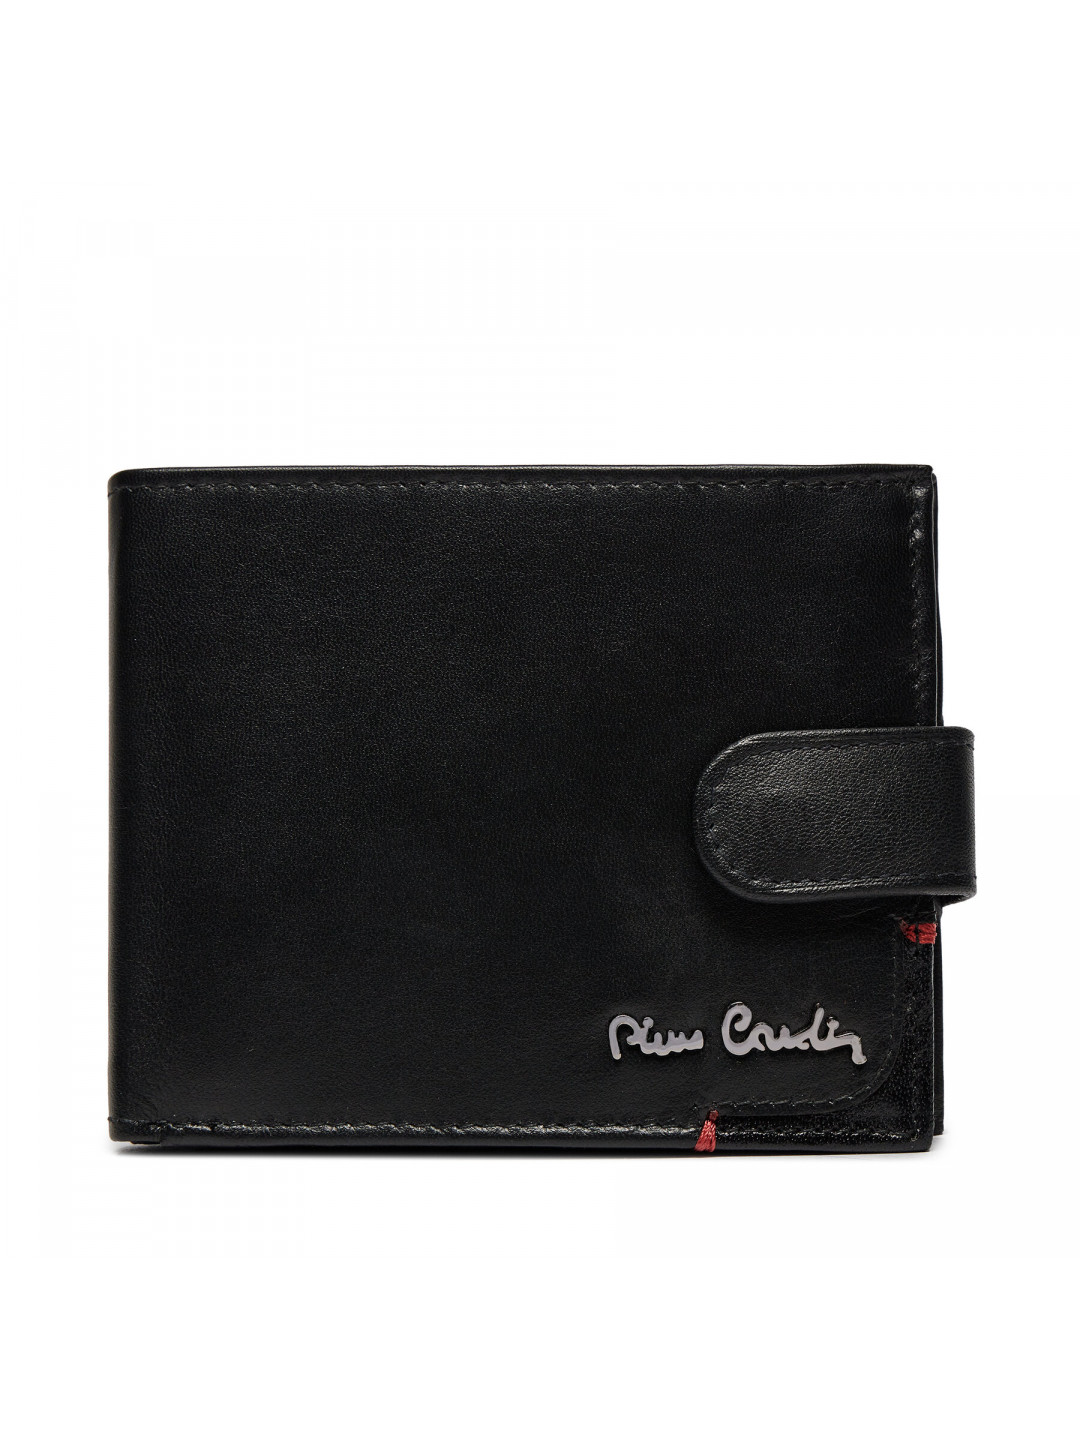 Velká pánská peněženka Pierre Cardin